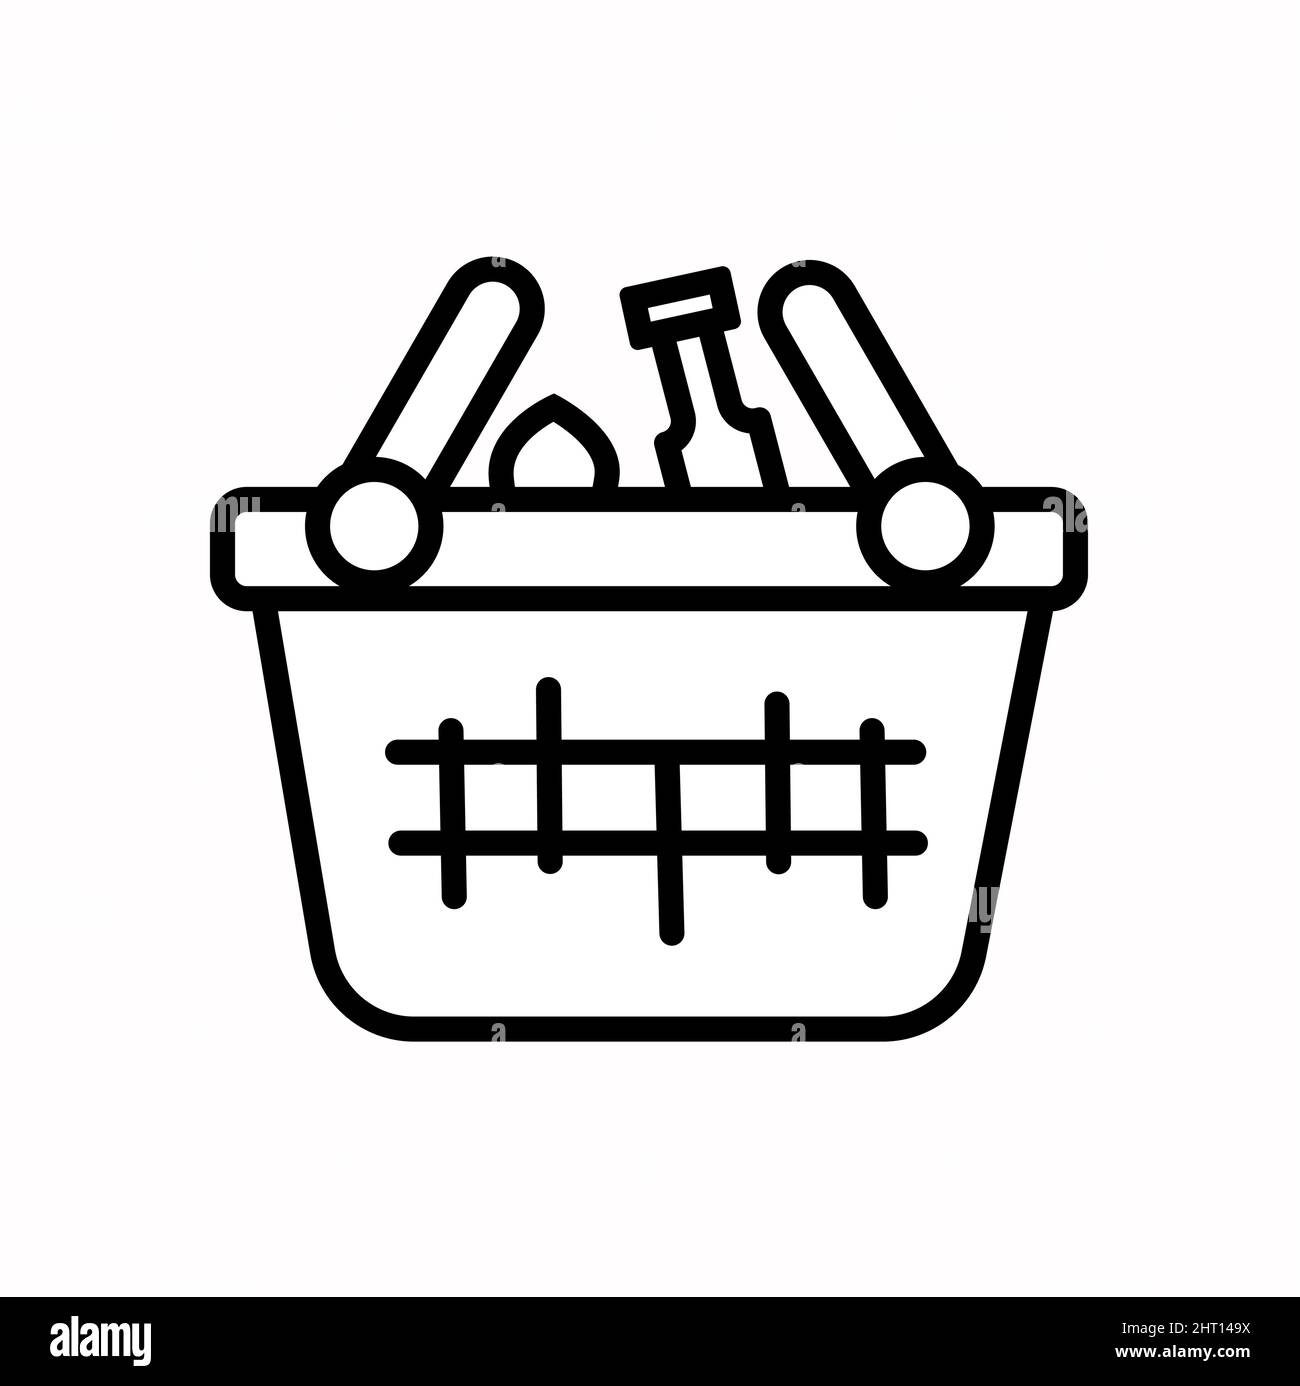 Icona astratta vettoriale sul bianco, illustrazione isolata per grafica e web design. Semplice simbolo piatto. Illustrazione Vettoriale